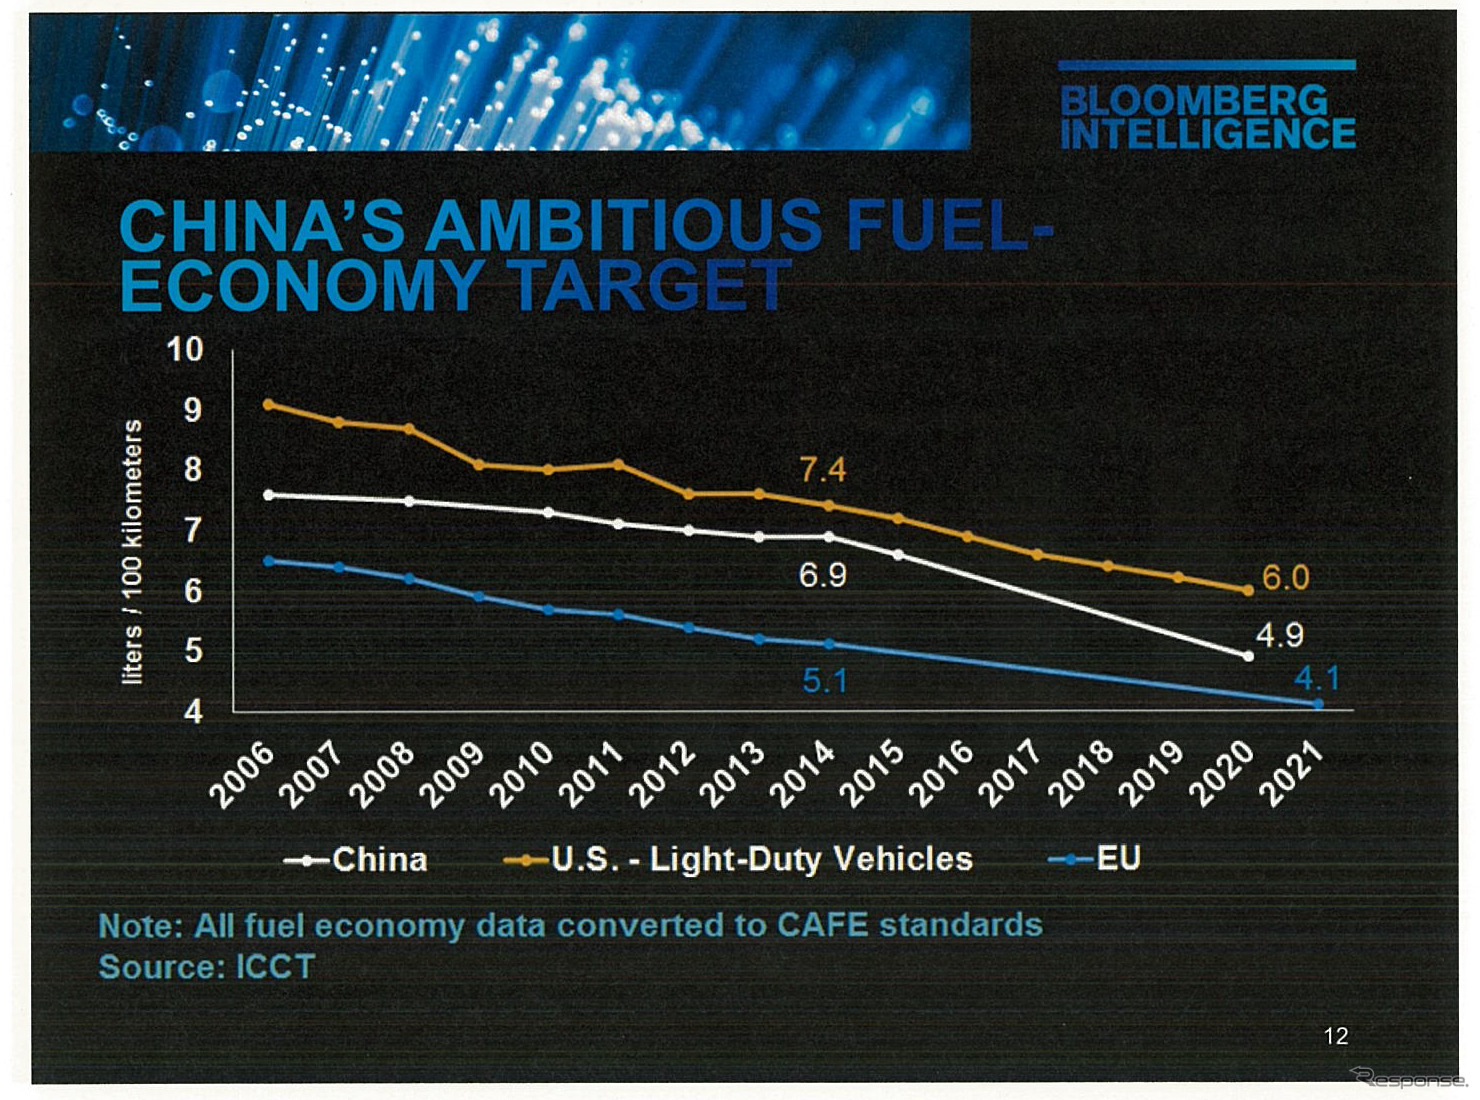 中国は自動車メーカーに対し、2020年までにリッター20km以上の平均燃費を出すように目標を設定している。